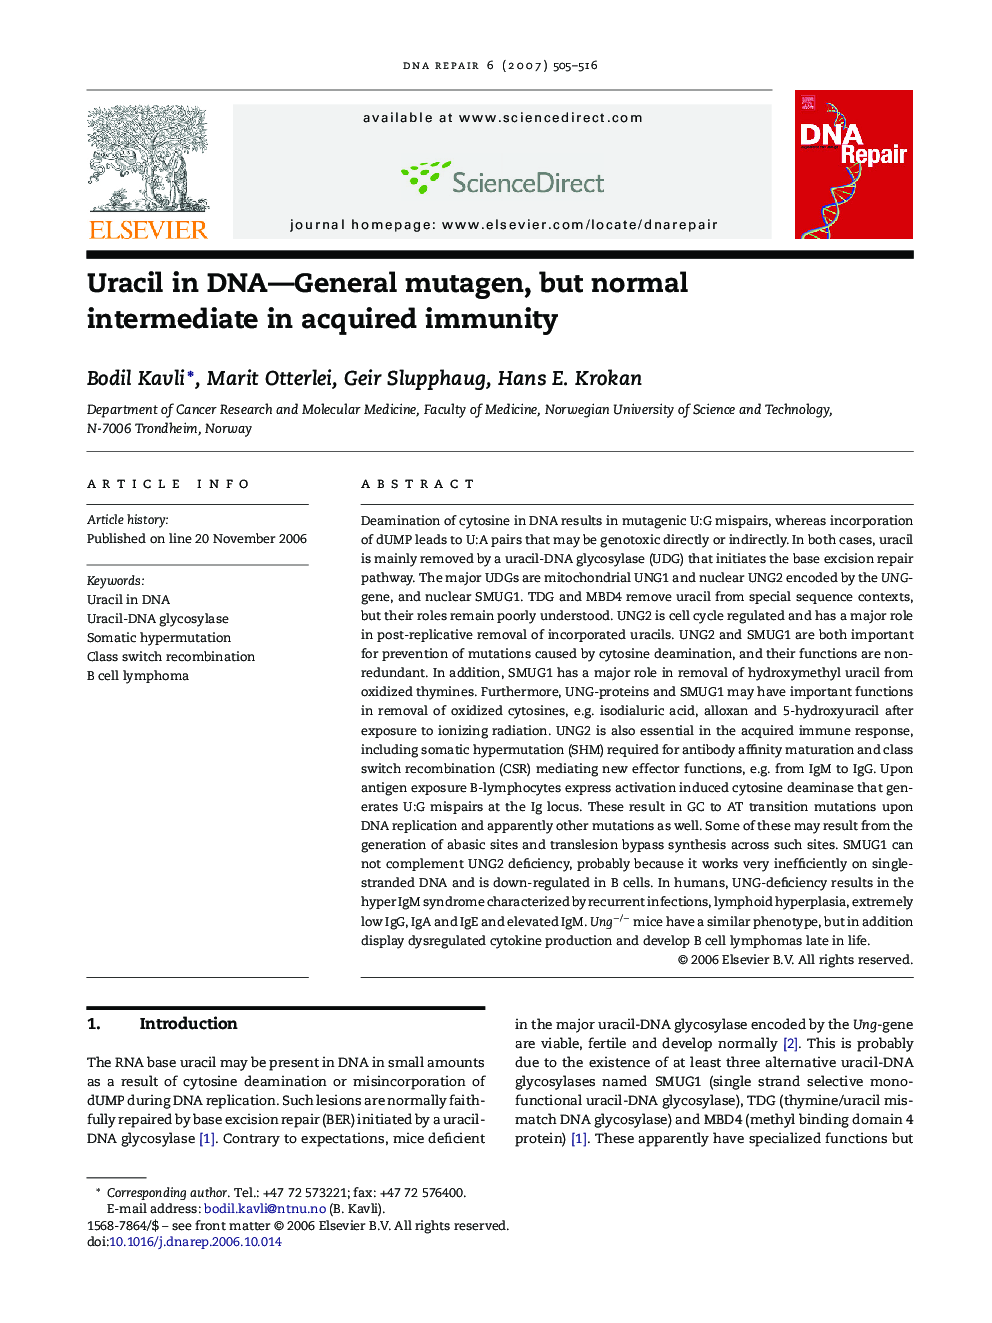 Uracil in DNA—General mutagen, but normal intermediate in acquired immunity